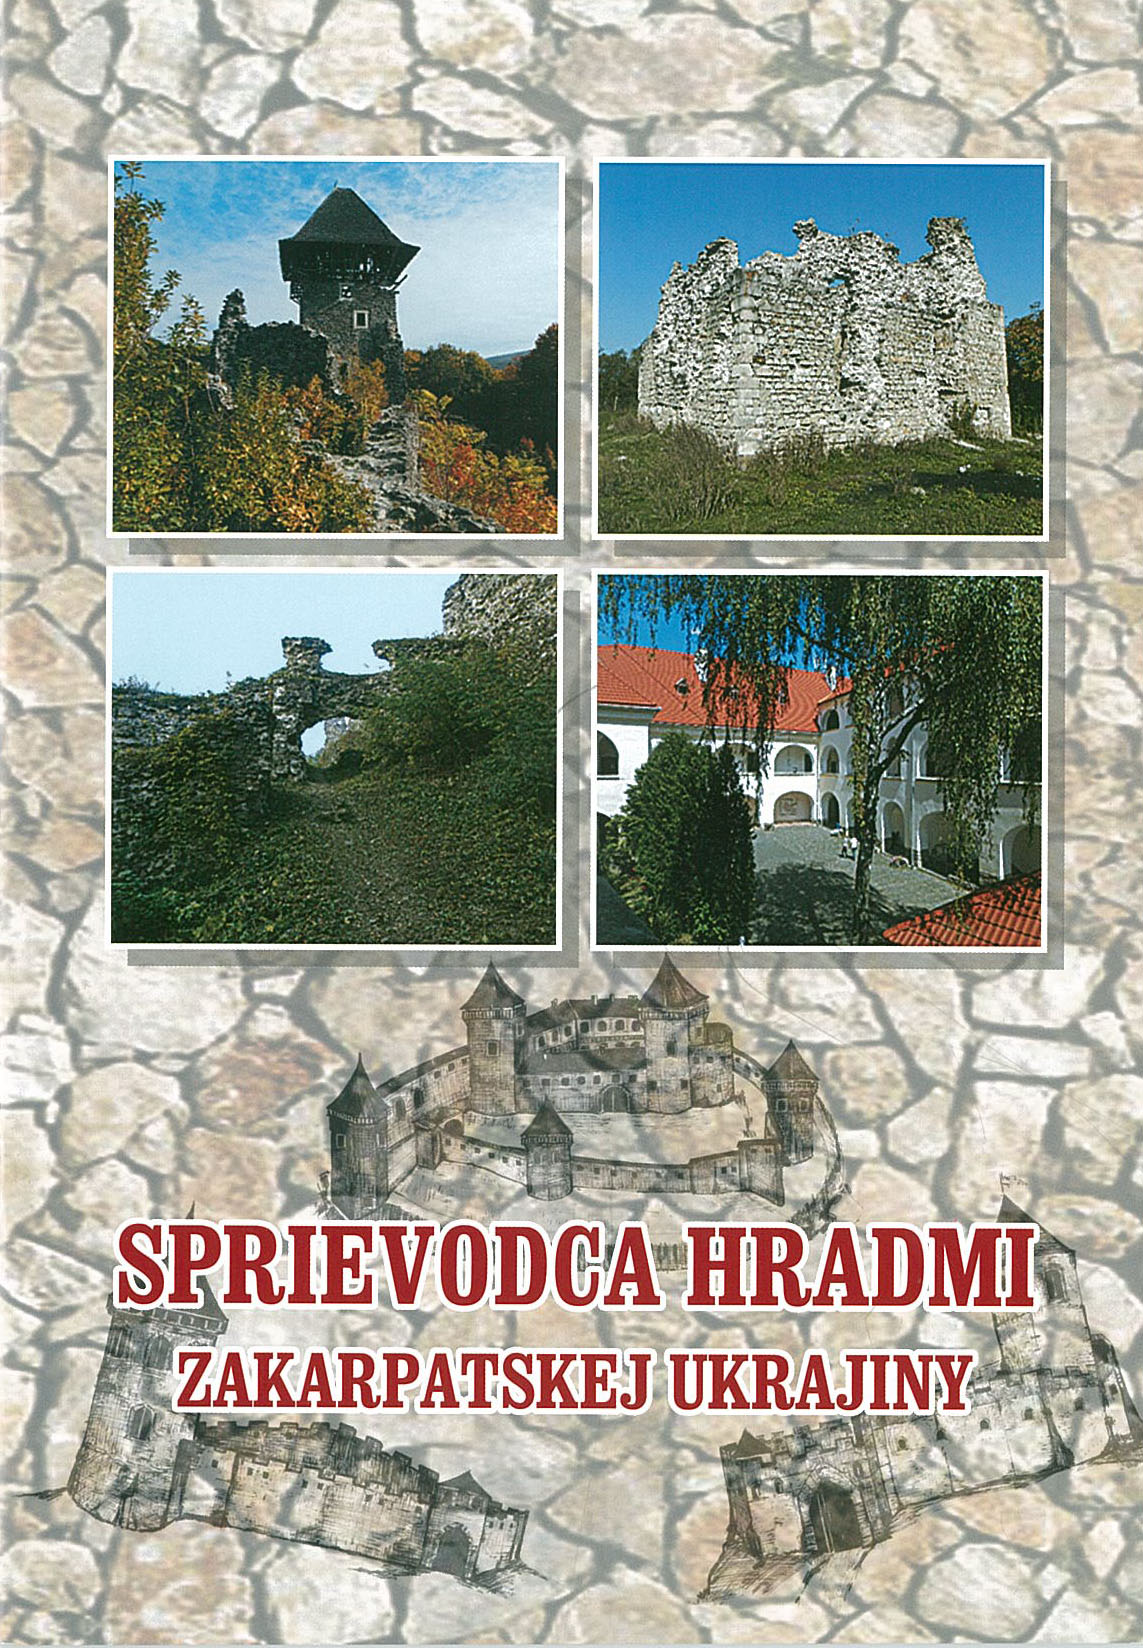 Sprievodca hradmi Zakarpatskej ukrajiny